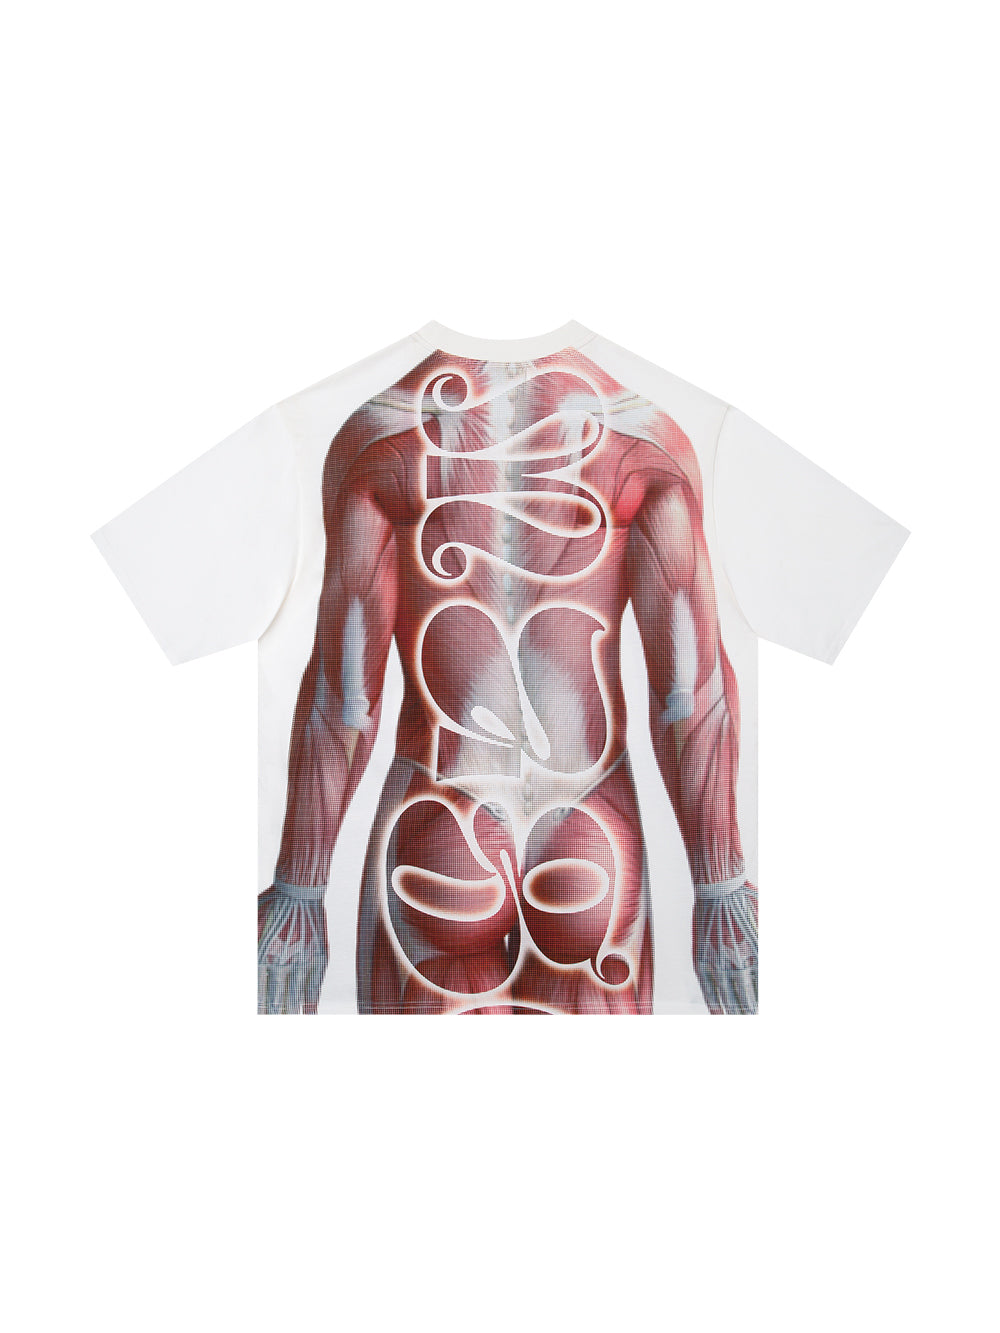 MUKTANK 23SS Human Muscle Print T-shirts Round Neck